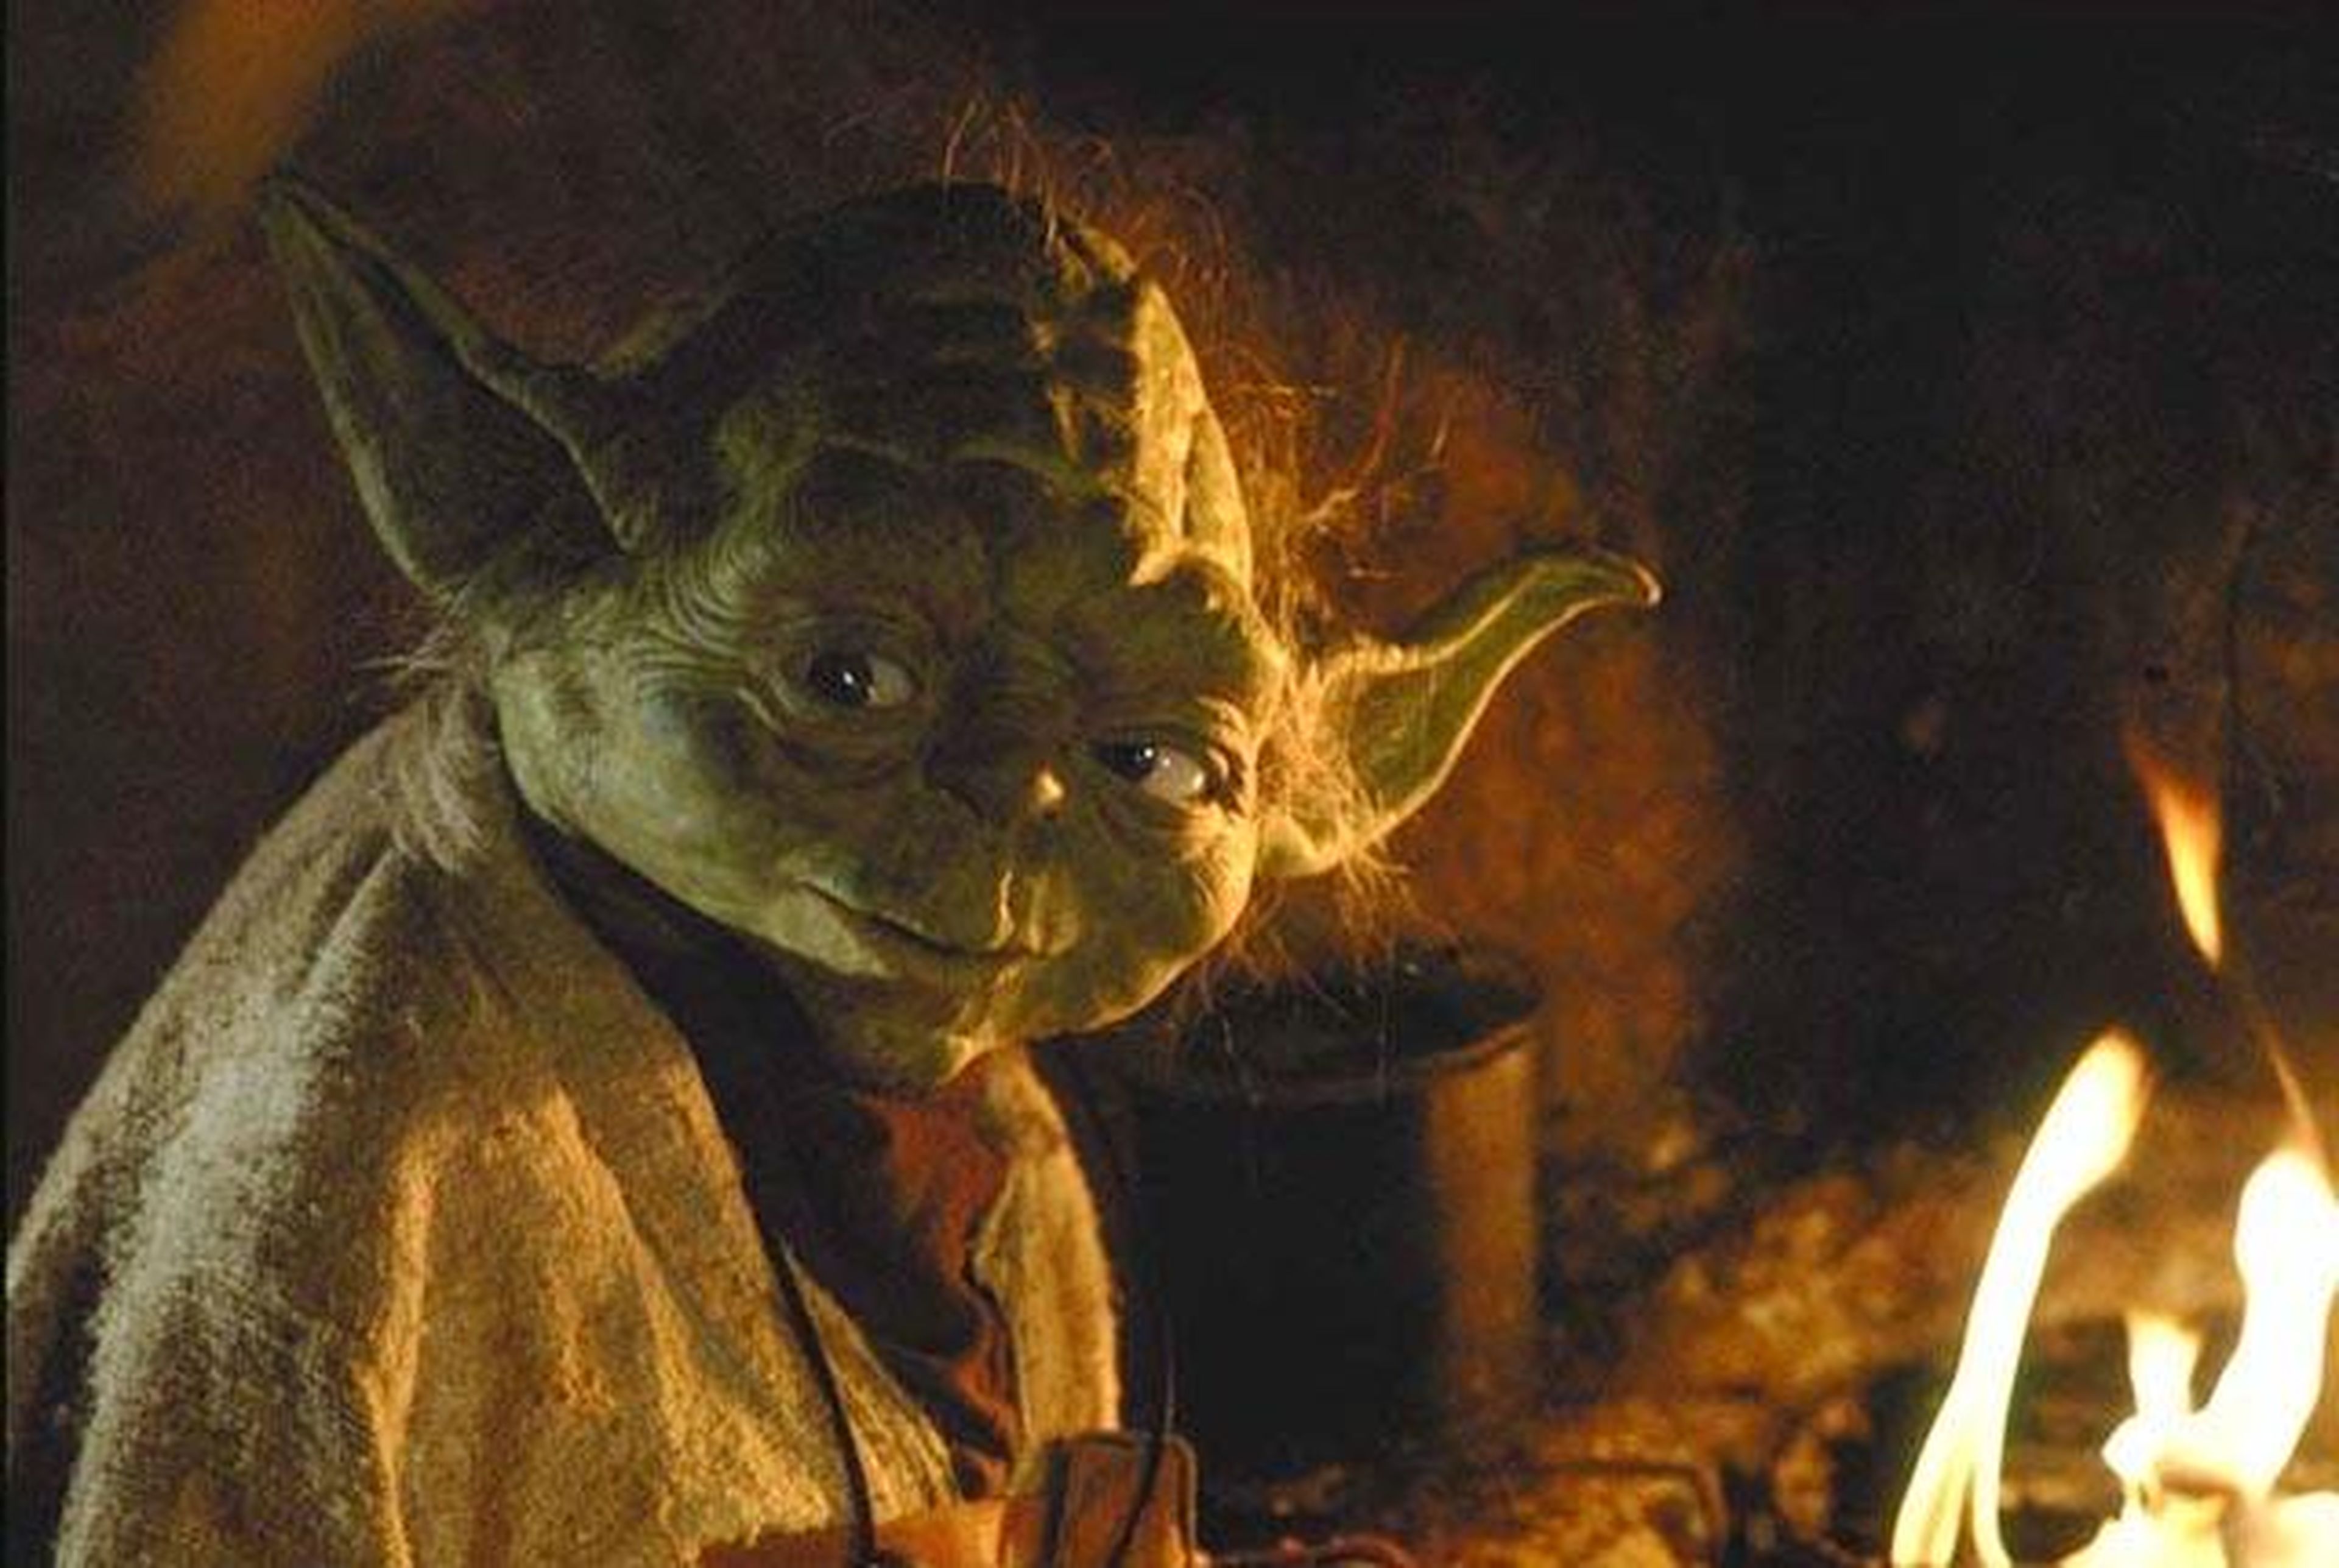 Yoda aparecerá en Star Wars Rebels, la serie animada de Disney XD